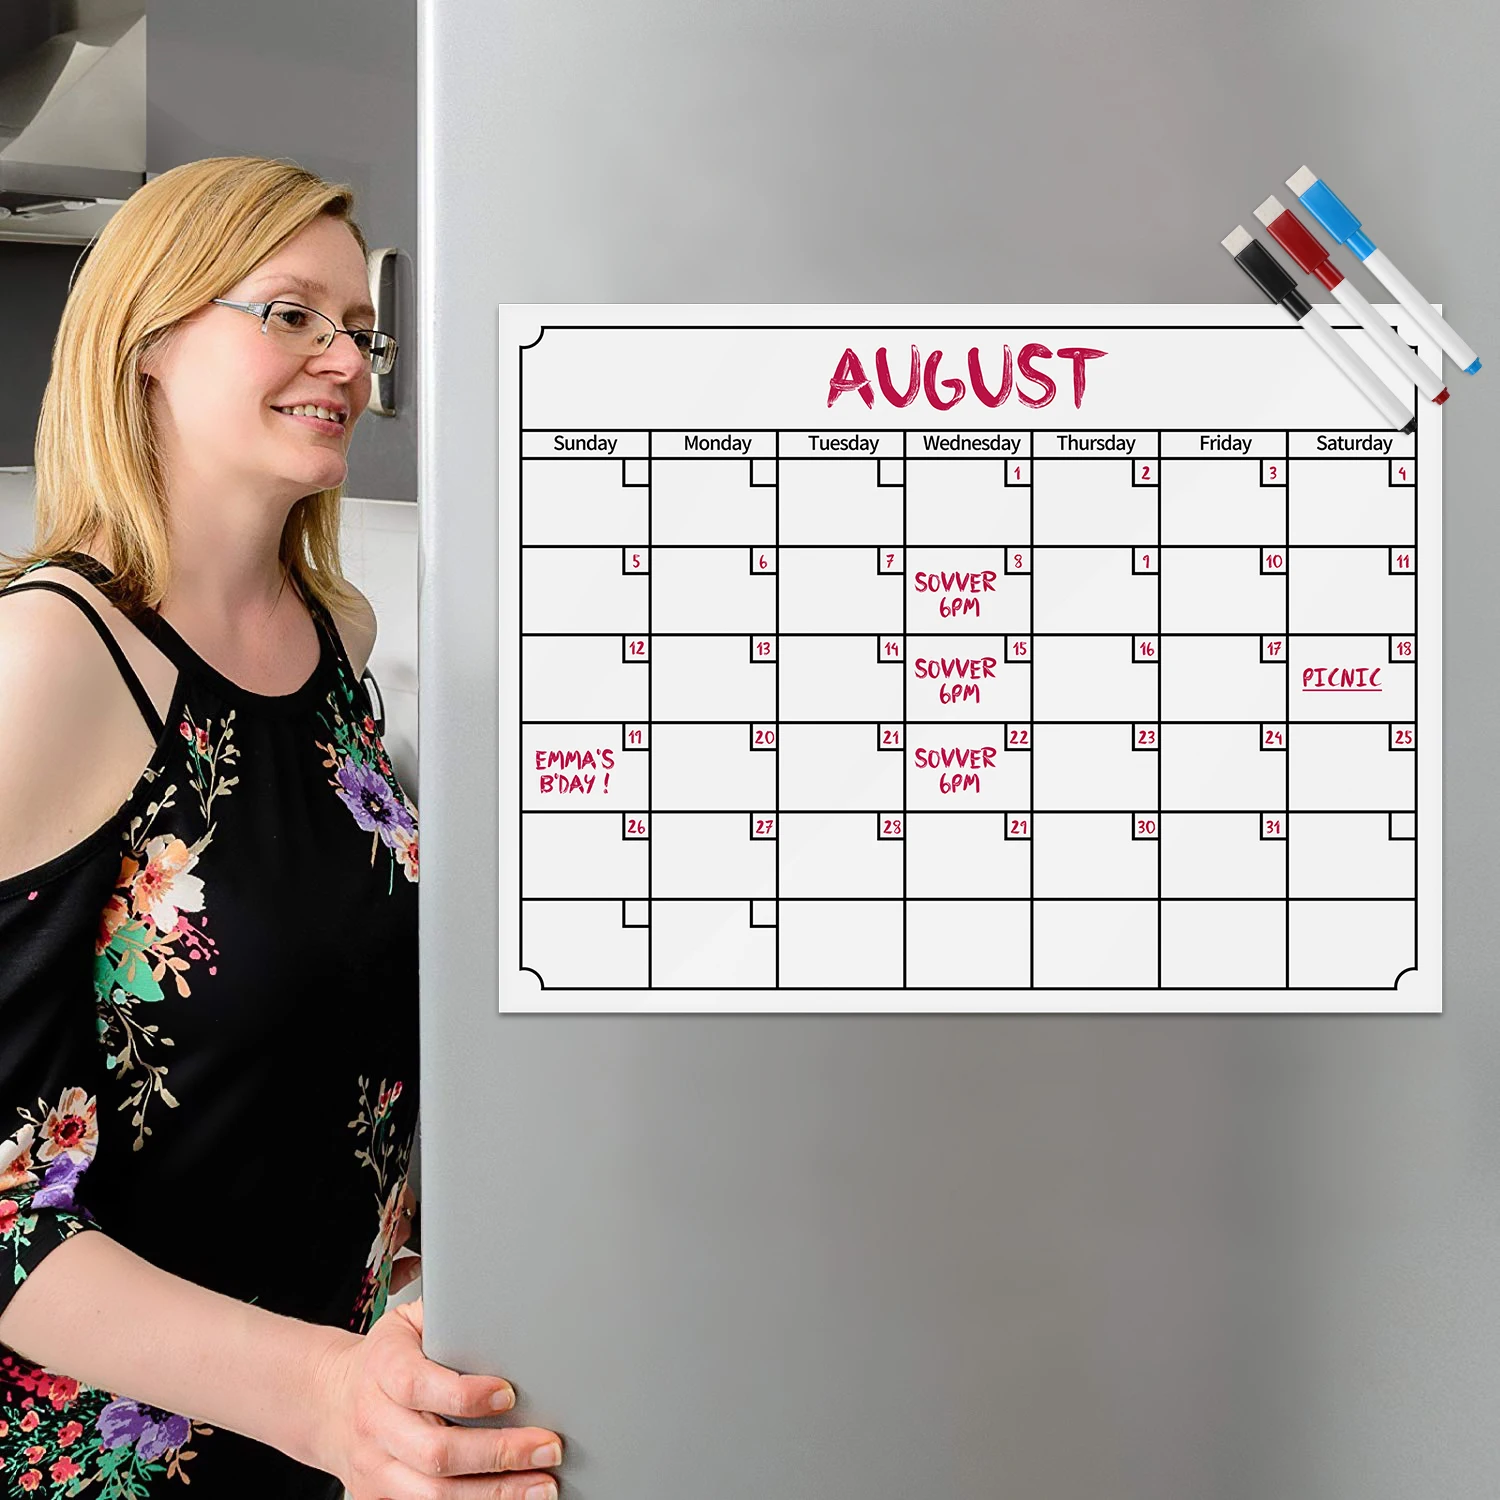 Магниты на холодильник магнитный календарь съемный Еженедельный планировщик чертеж ежемесячная Планерная доска холодильник расписание магнит стикер